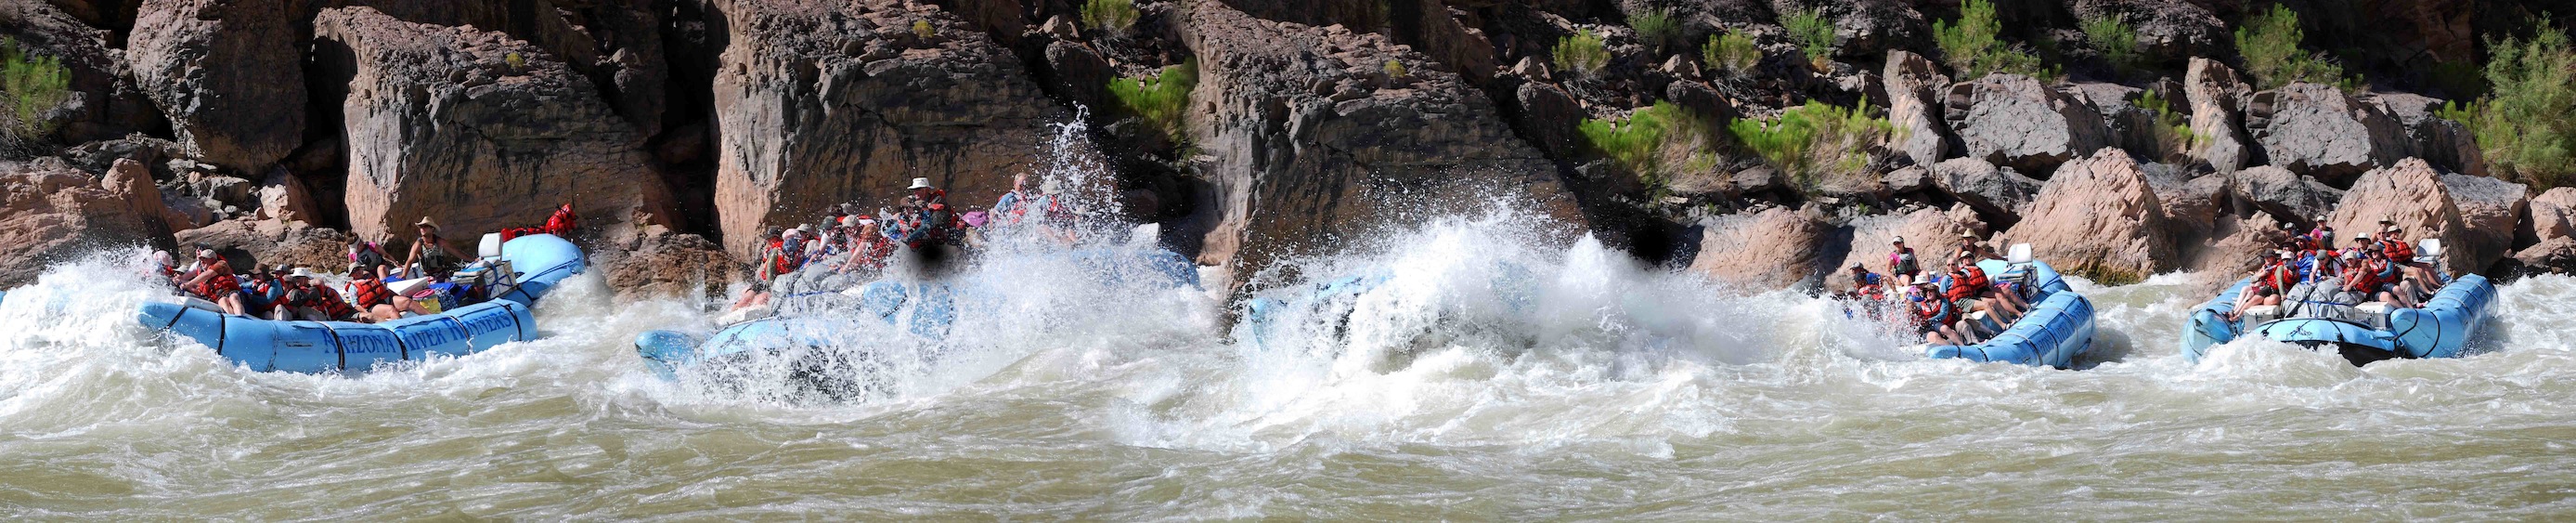 Grand Canyon Colorado River Raft Sequence